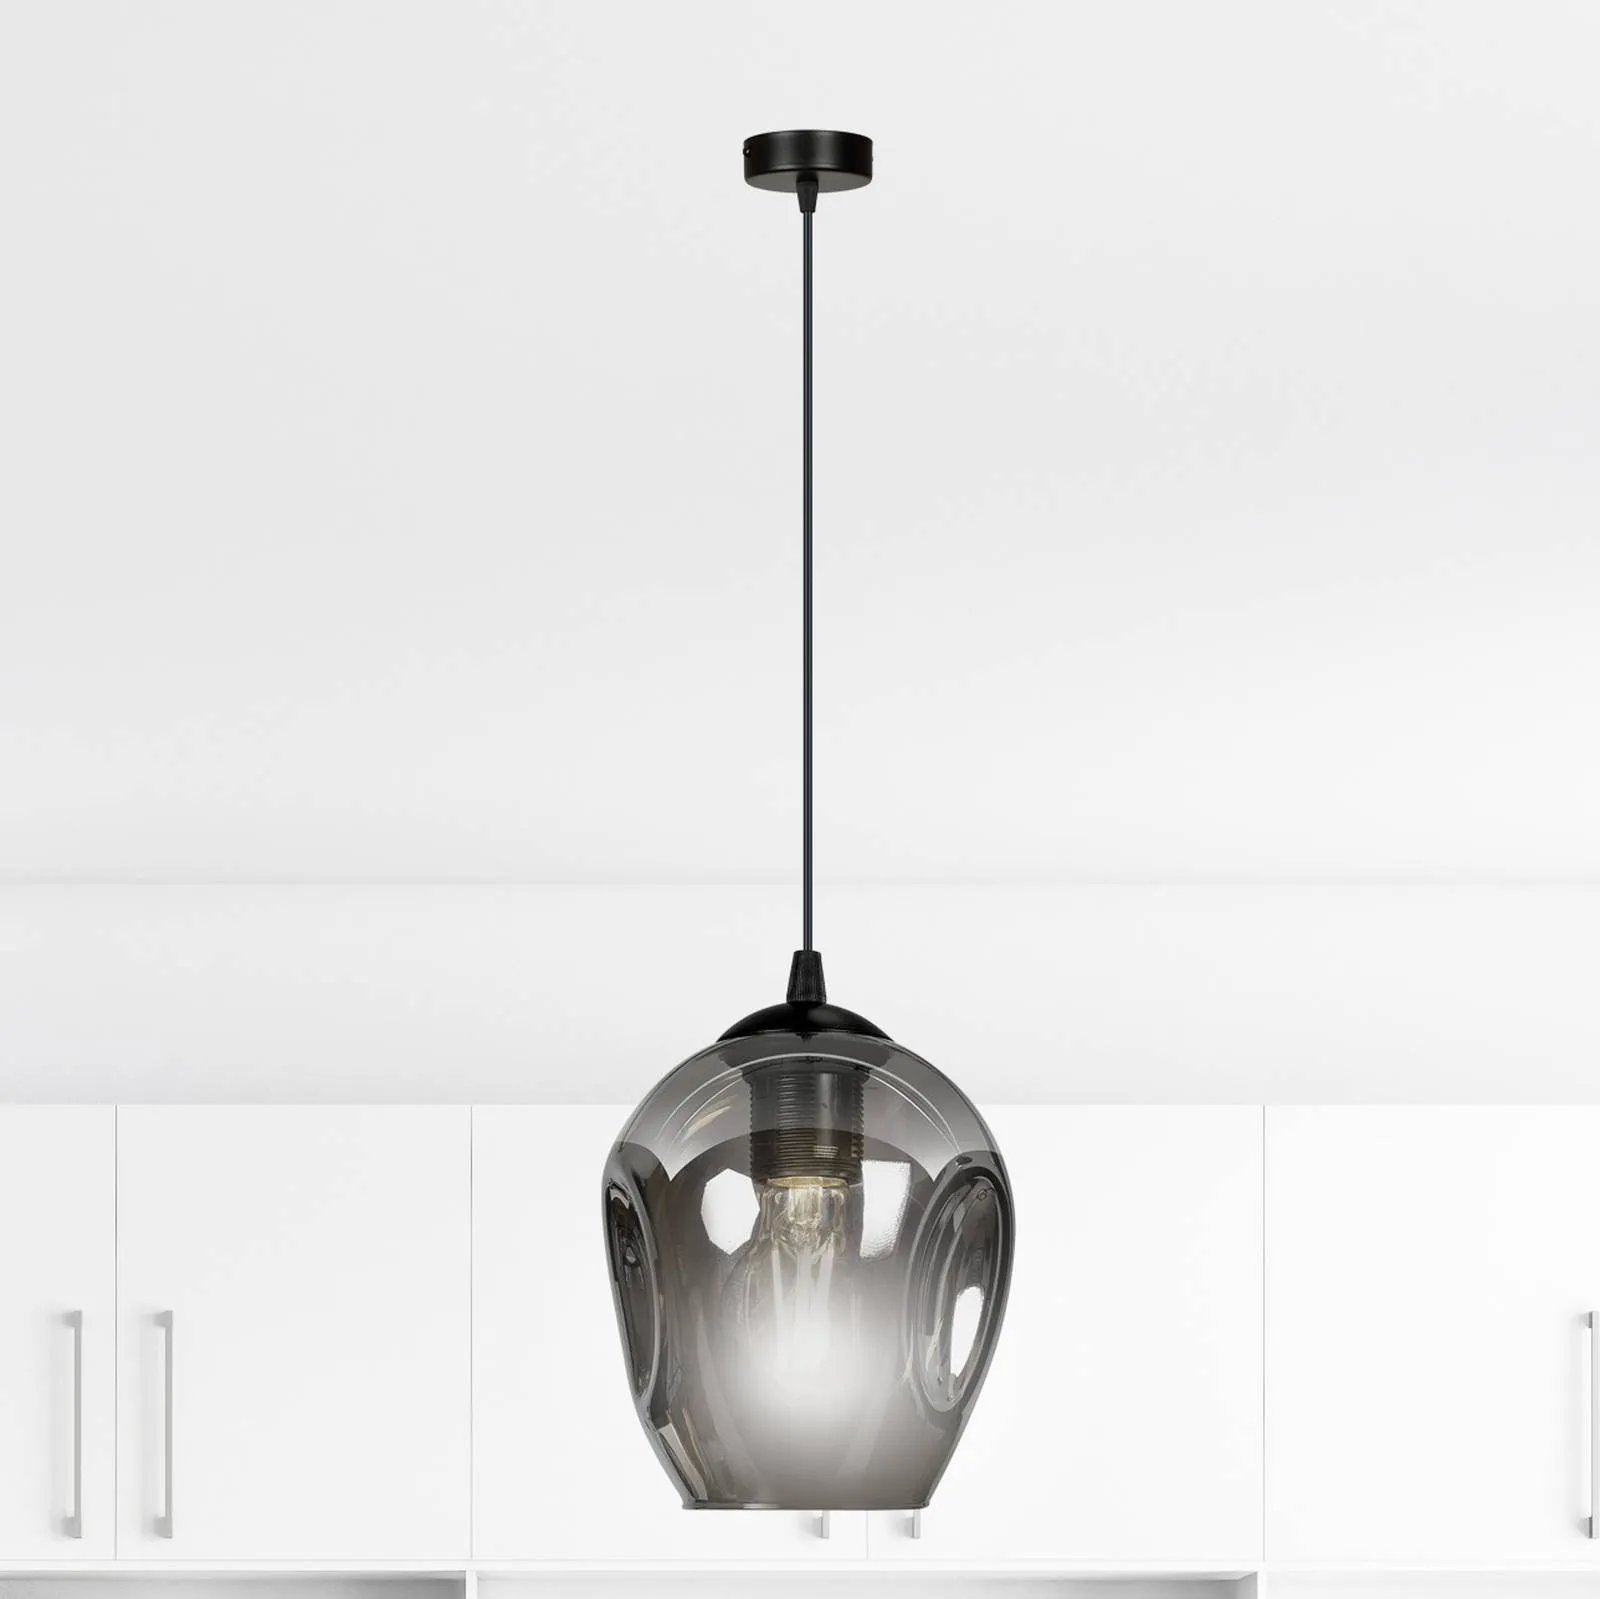 Starla pendant lamp one-bulb, graphite glass